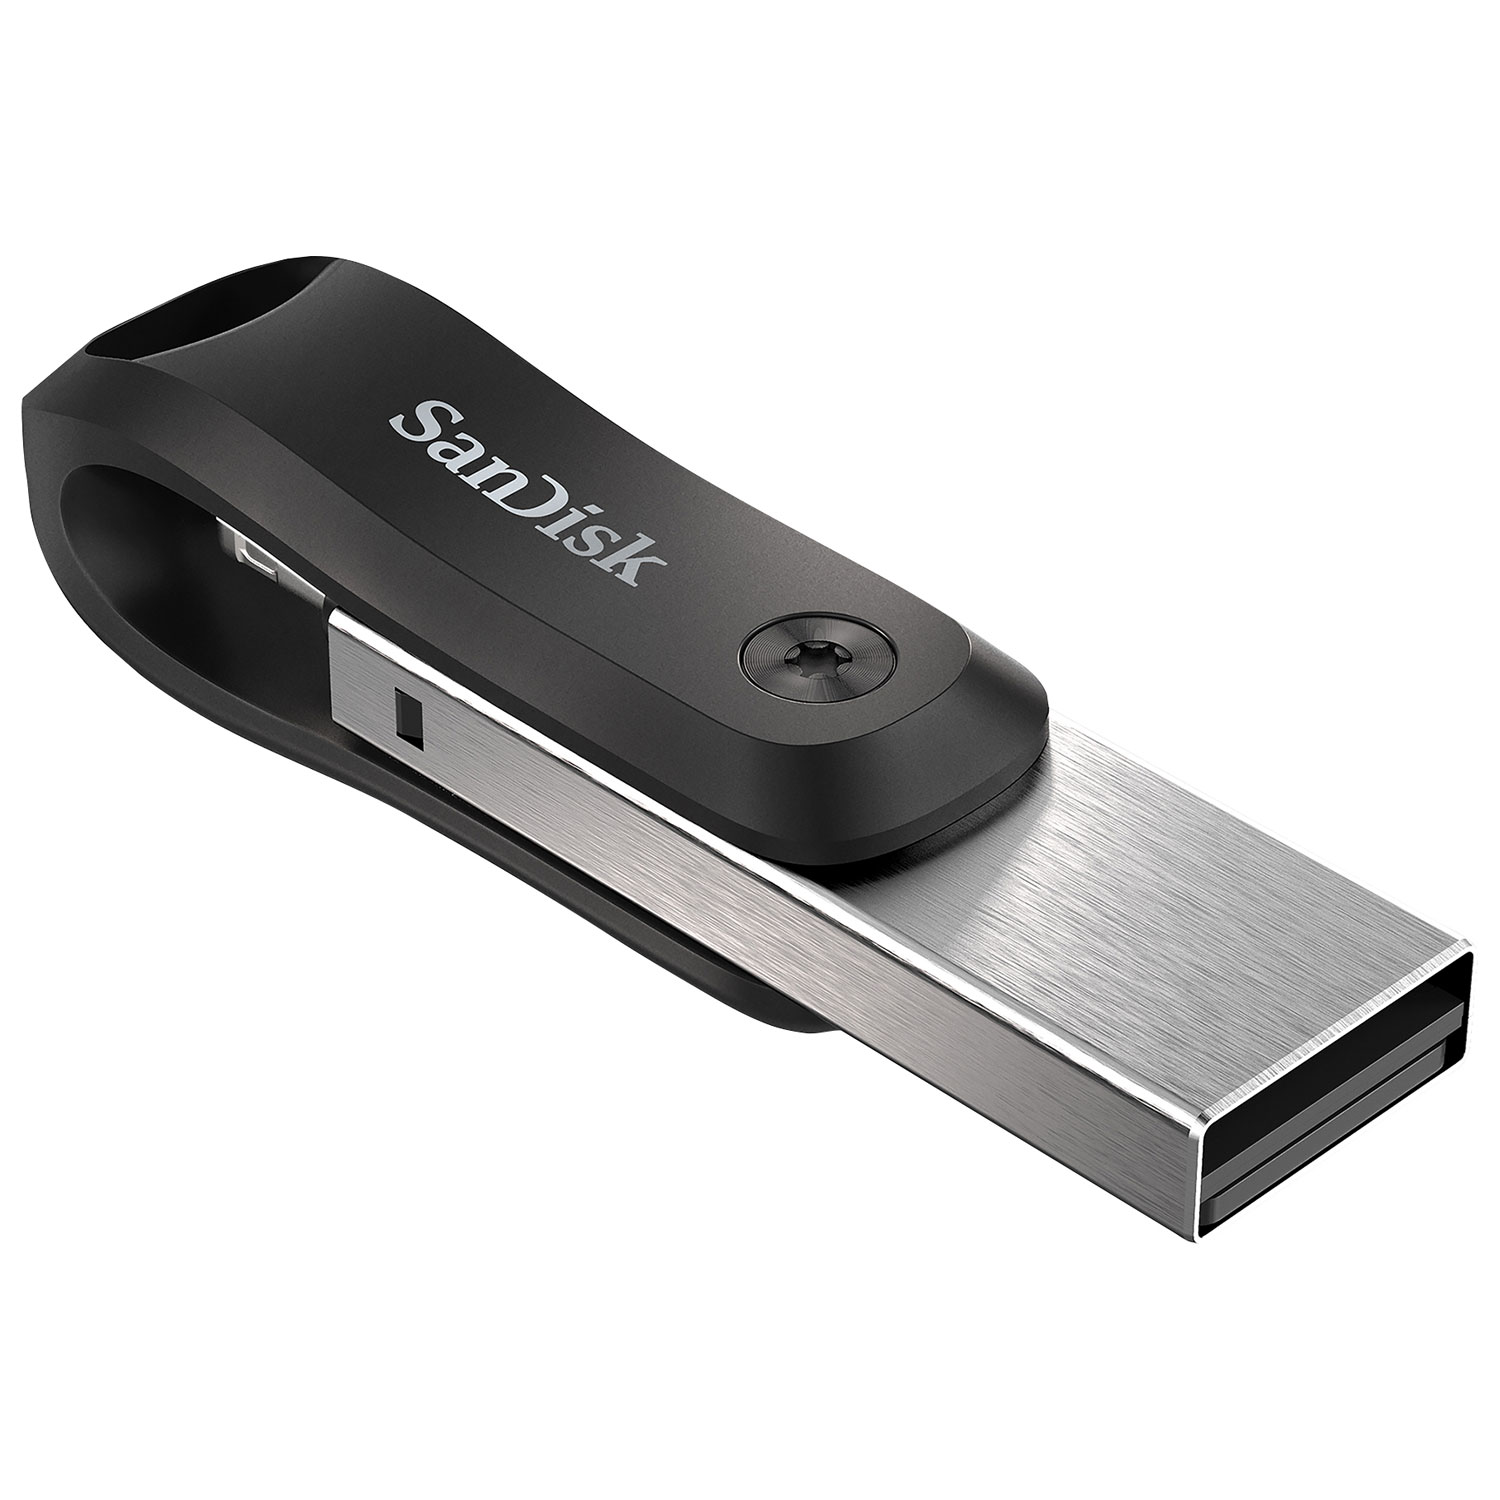 Clé USB 2.0 - rétractable - 64 Go - Cultura - Clé USB - Disques